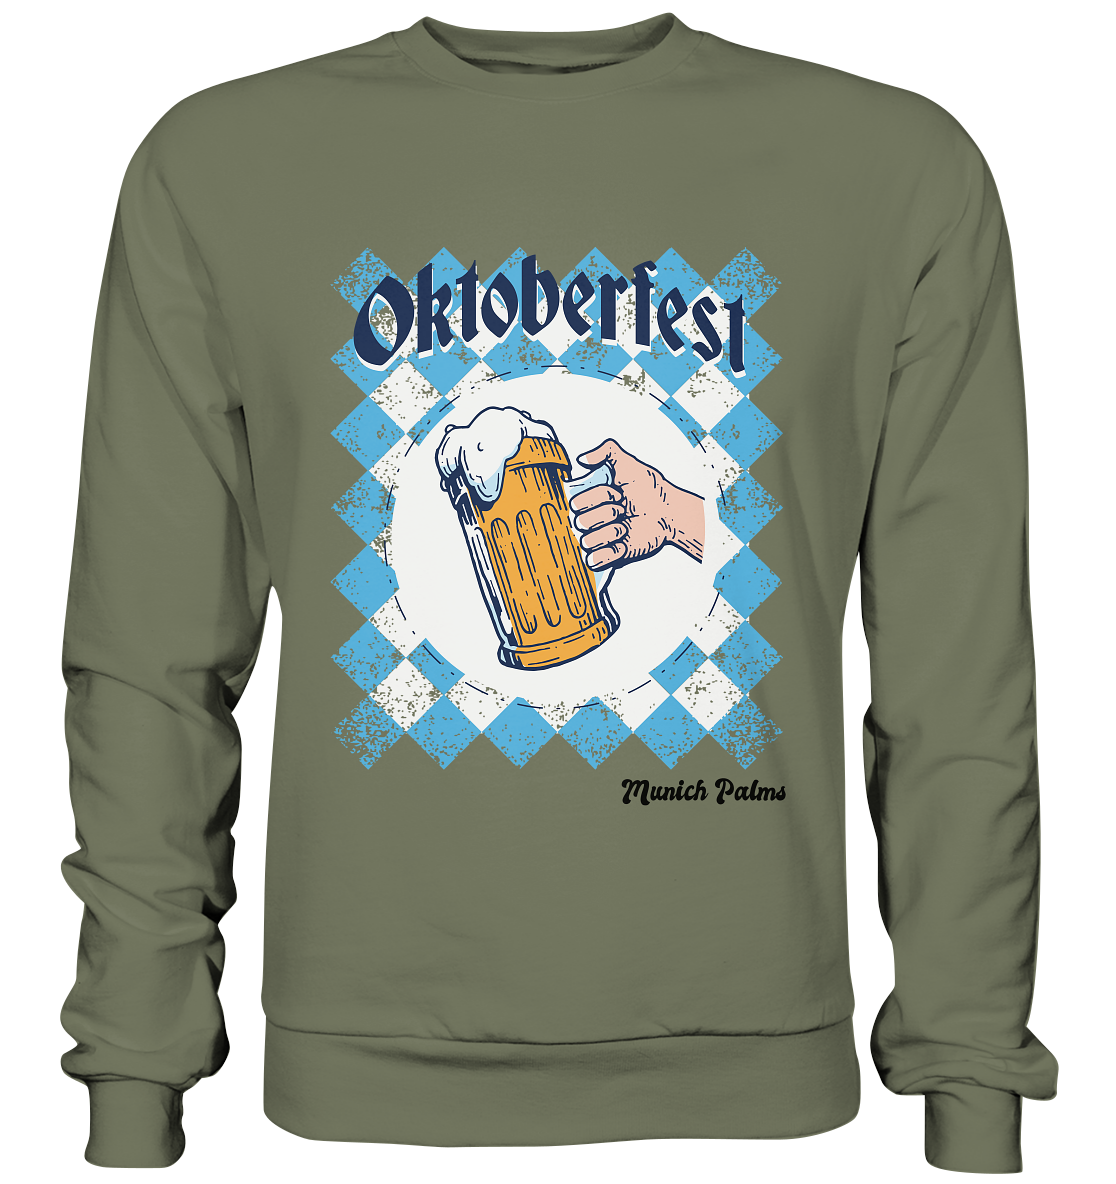 Oktoberfest Maßkrug in bayrischer Raute Design by Munich Palms  - Premium Sweatshirt